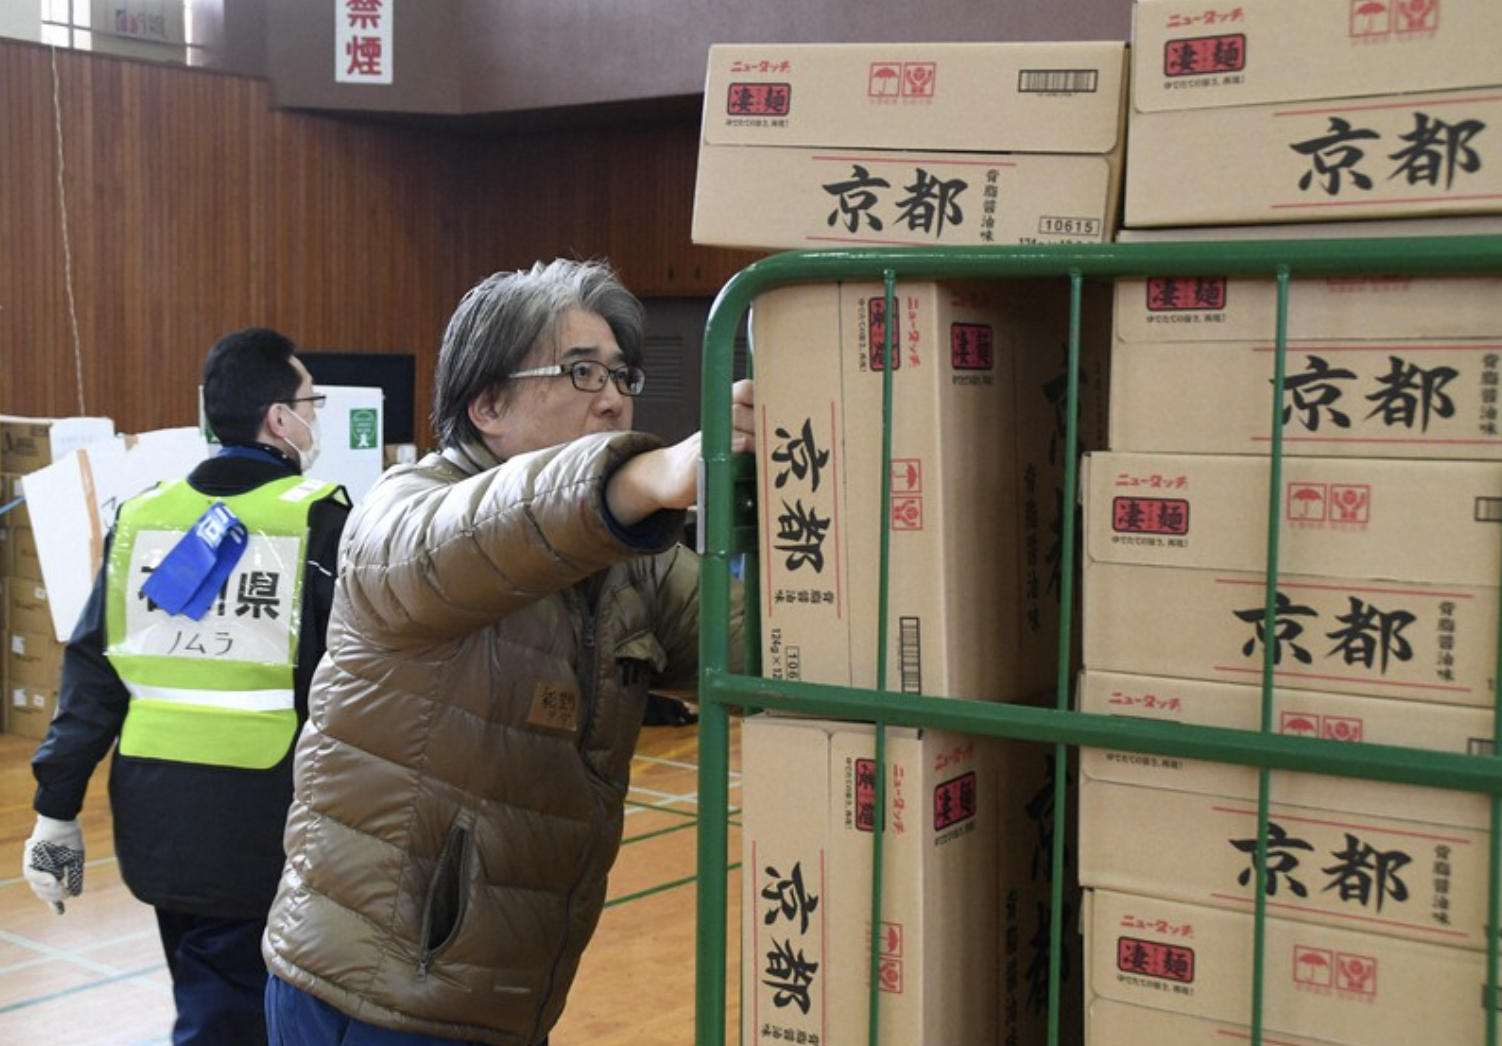 Nhân viên cứu trợ, y tá Nhật Bản kiệt sức sau hơn 1 tháng xảy ra động đất - Ảnh 1.